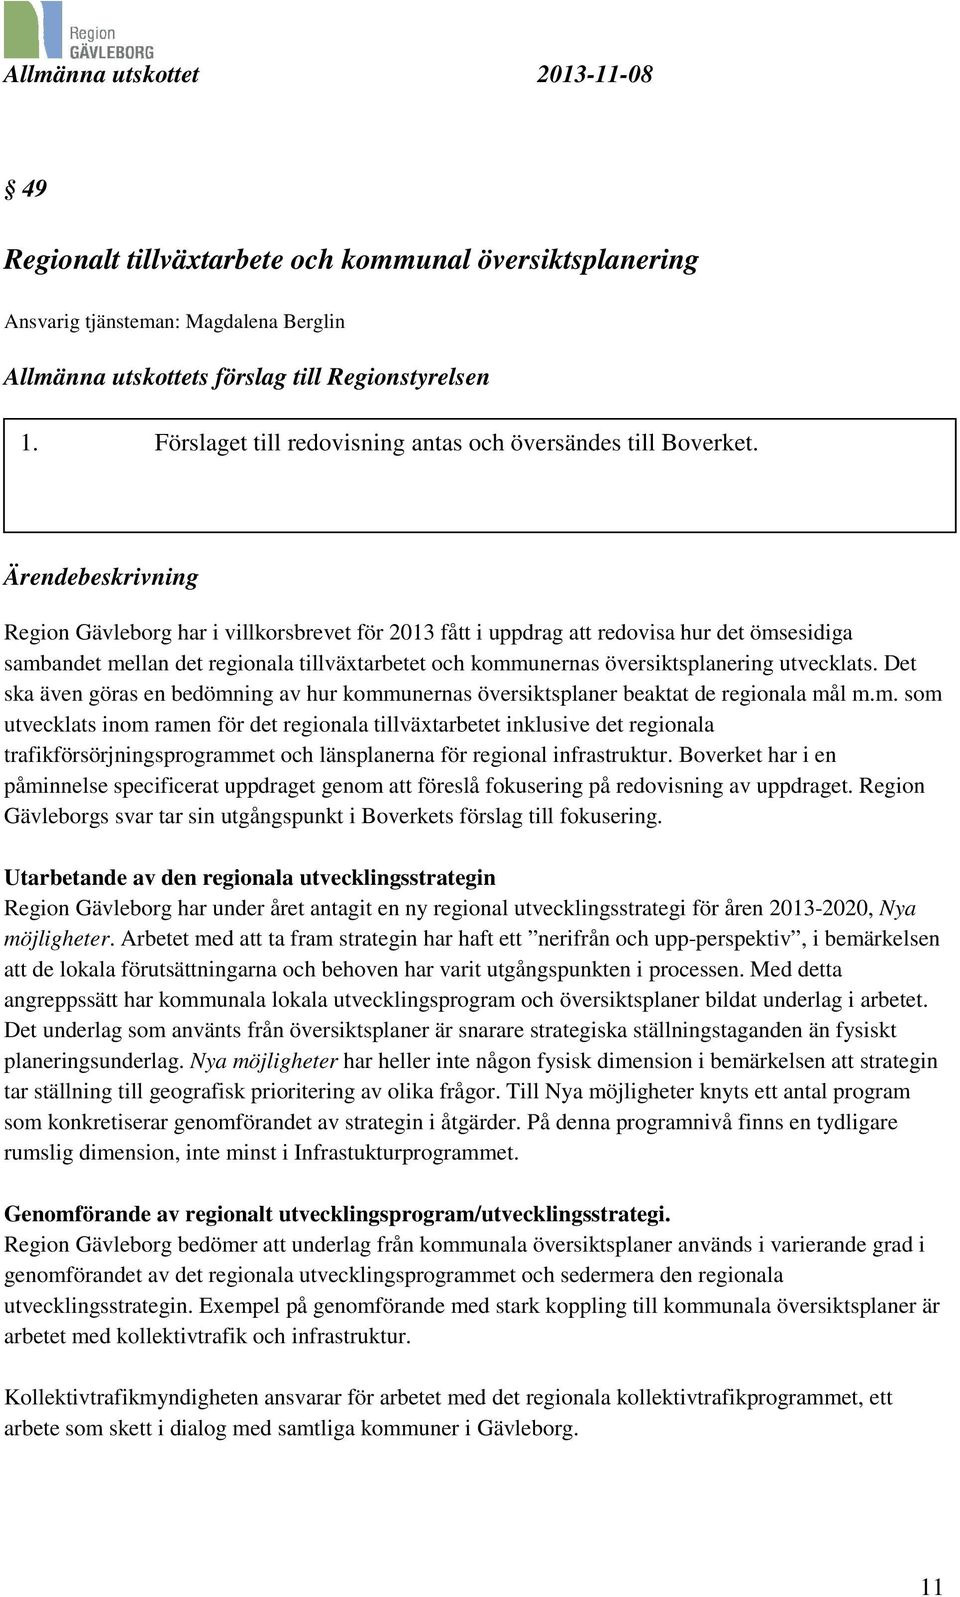 Ärendebeskrivning Region Gävleborg har i villkorsbrevet för 2013 fått i uppdrag att redovisa hur det ömsesidiga sambandet mellan det regionala tillväxtarbetet och kommunernas översiktsplanering